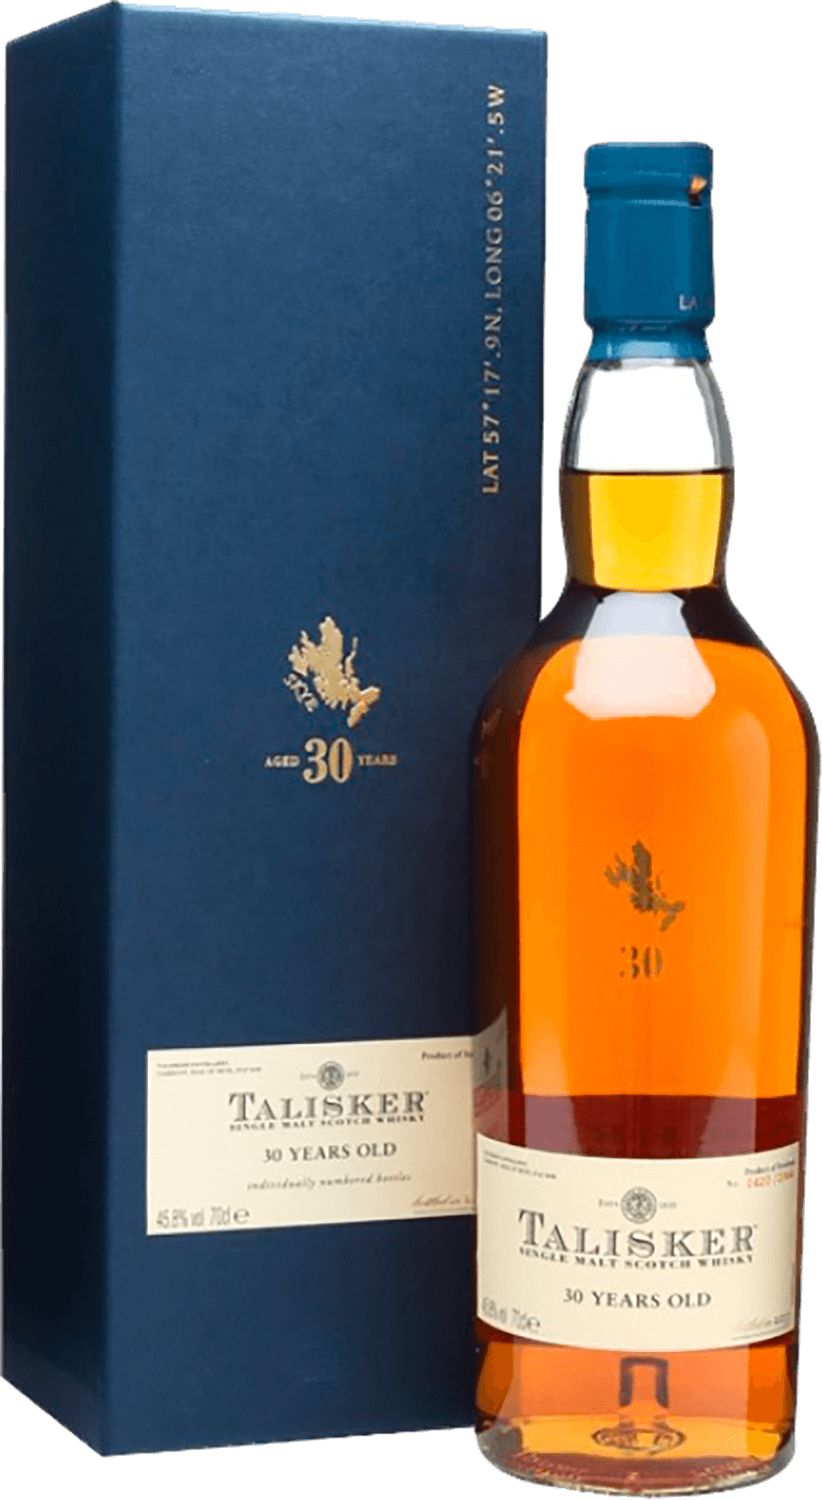 Talisker 30 y.o. Single Malt Scotch Whisky (gift box)